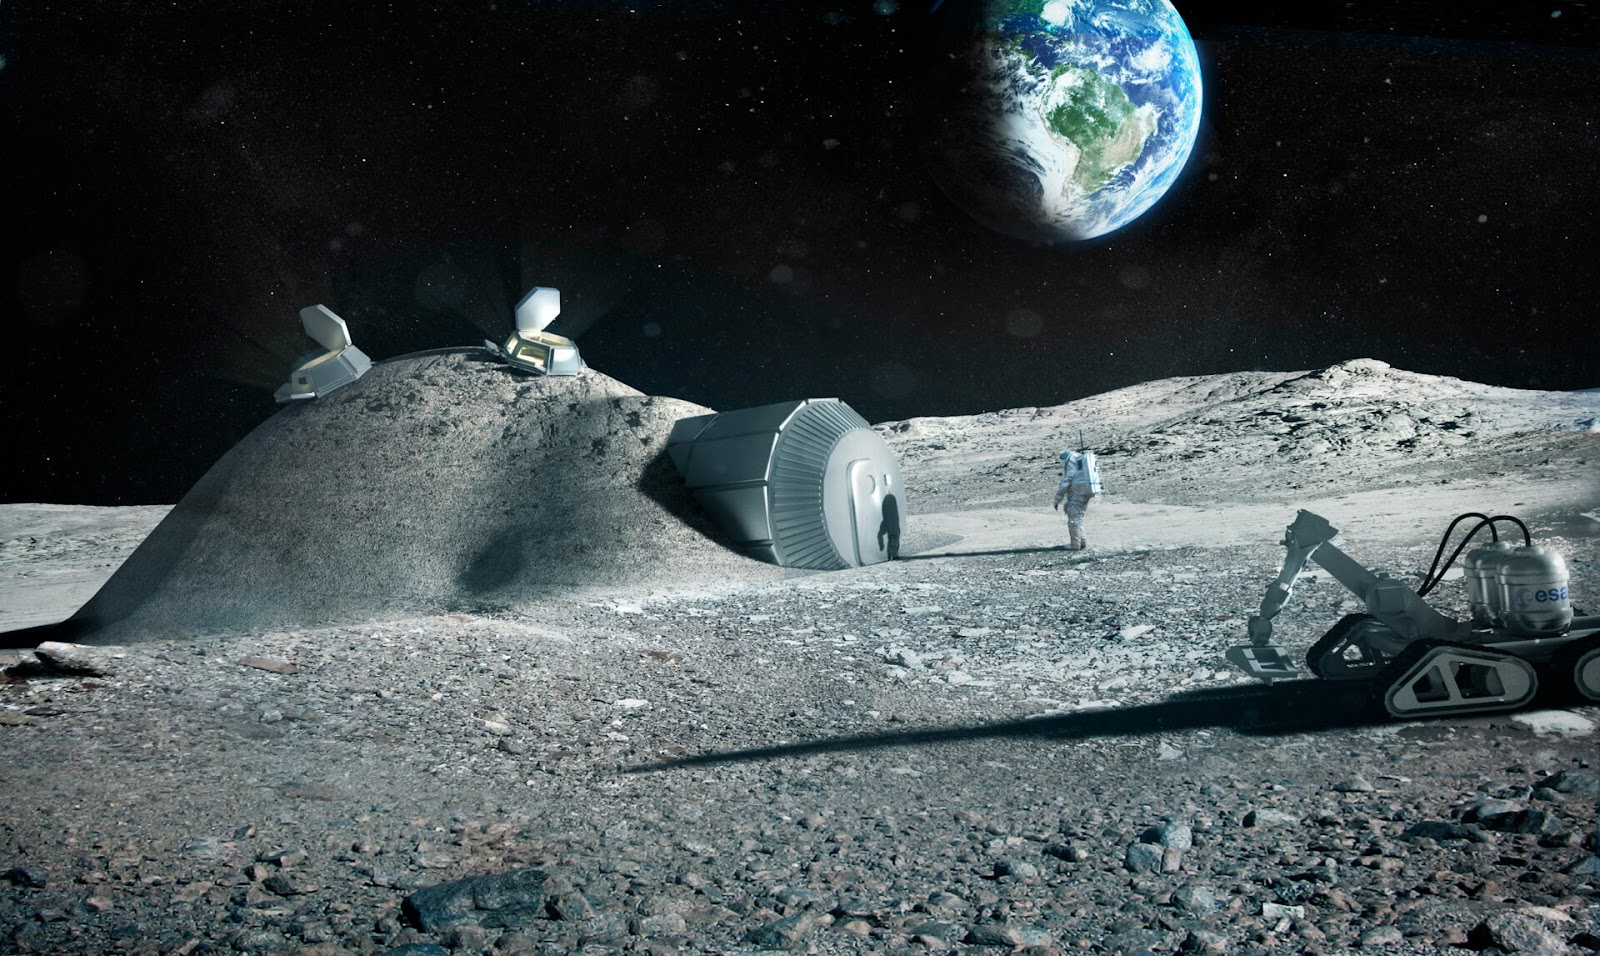 Разрабатывая концепты лунных поселений, учёные пришли к схожим идеям. К примеру, как этот жилой блок, надёжно укрытый за слоем реголита. По данным сайта https://universemagazine.com/